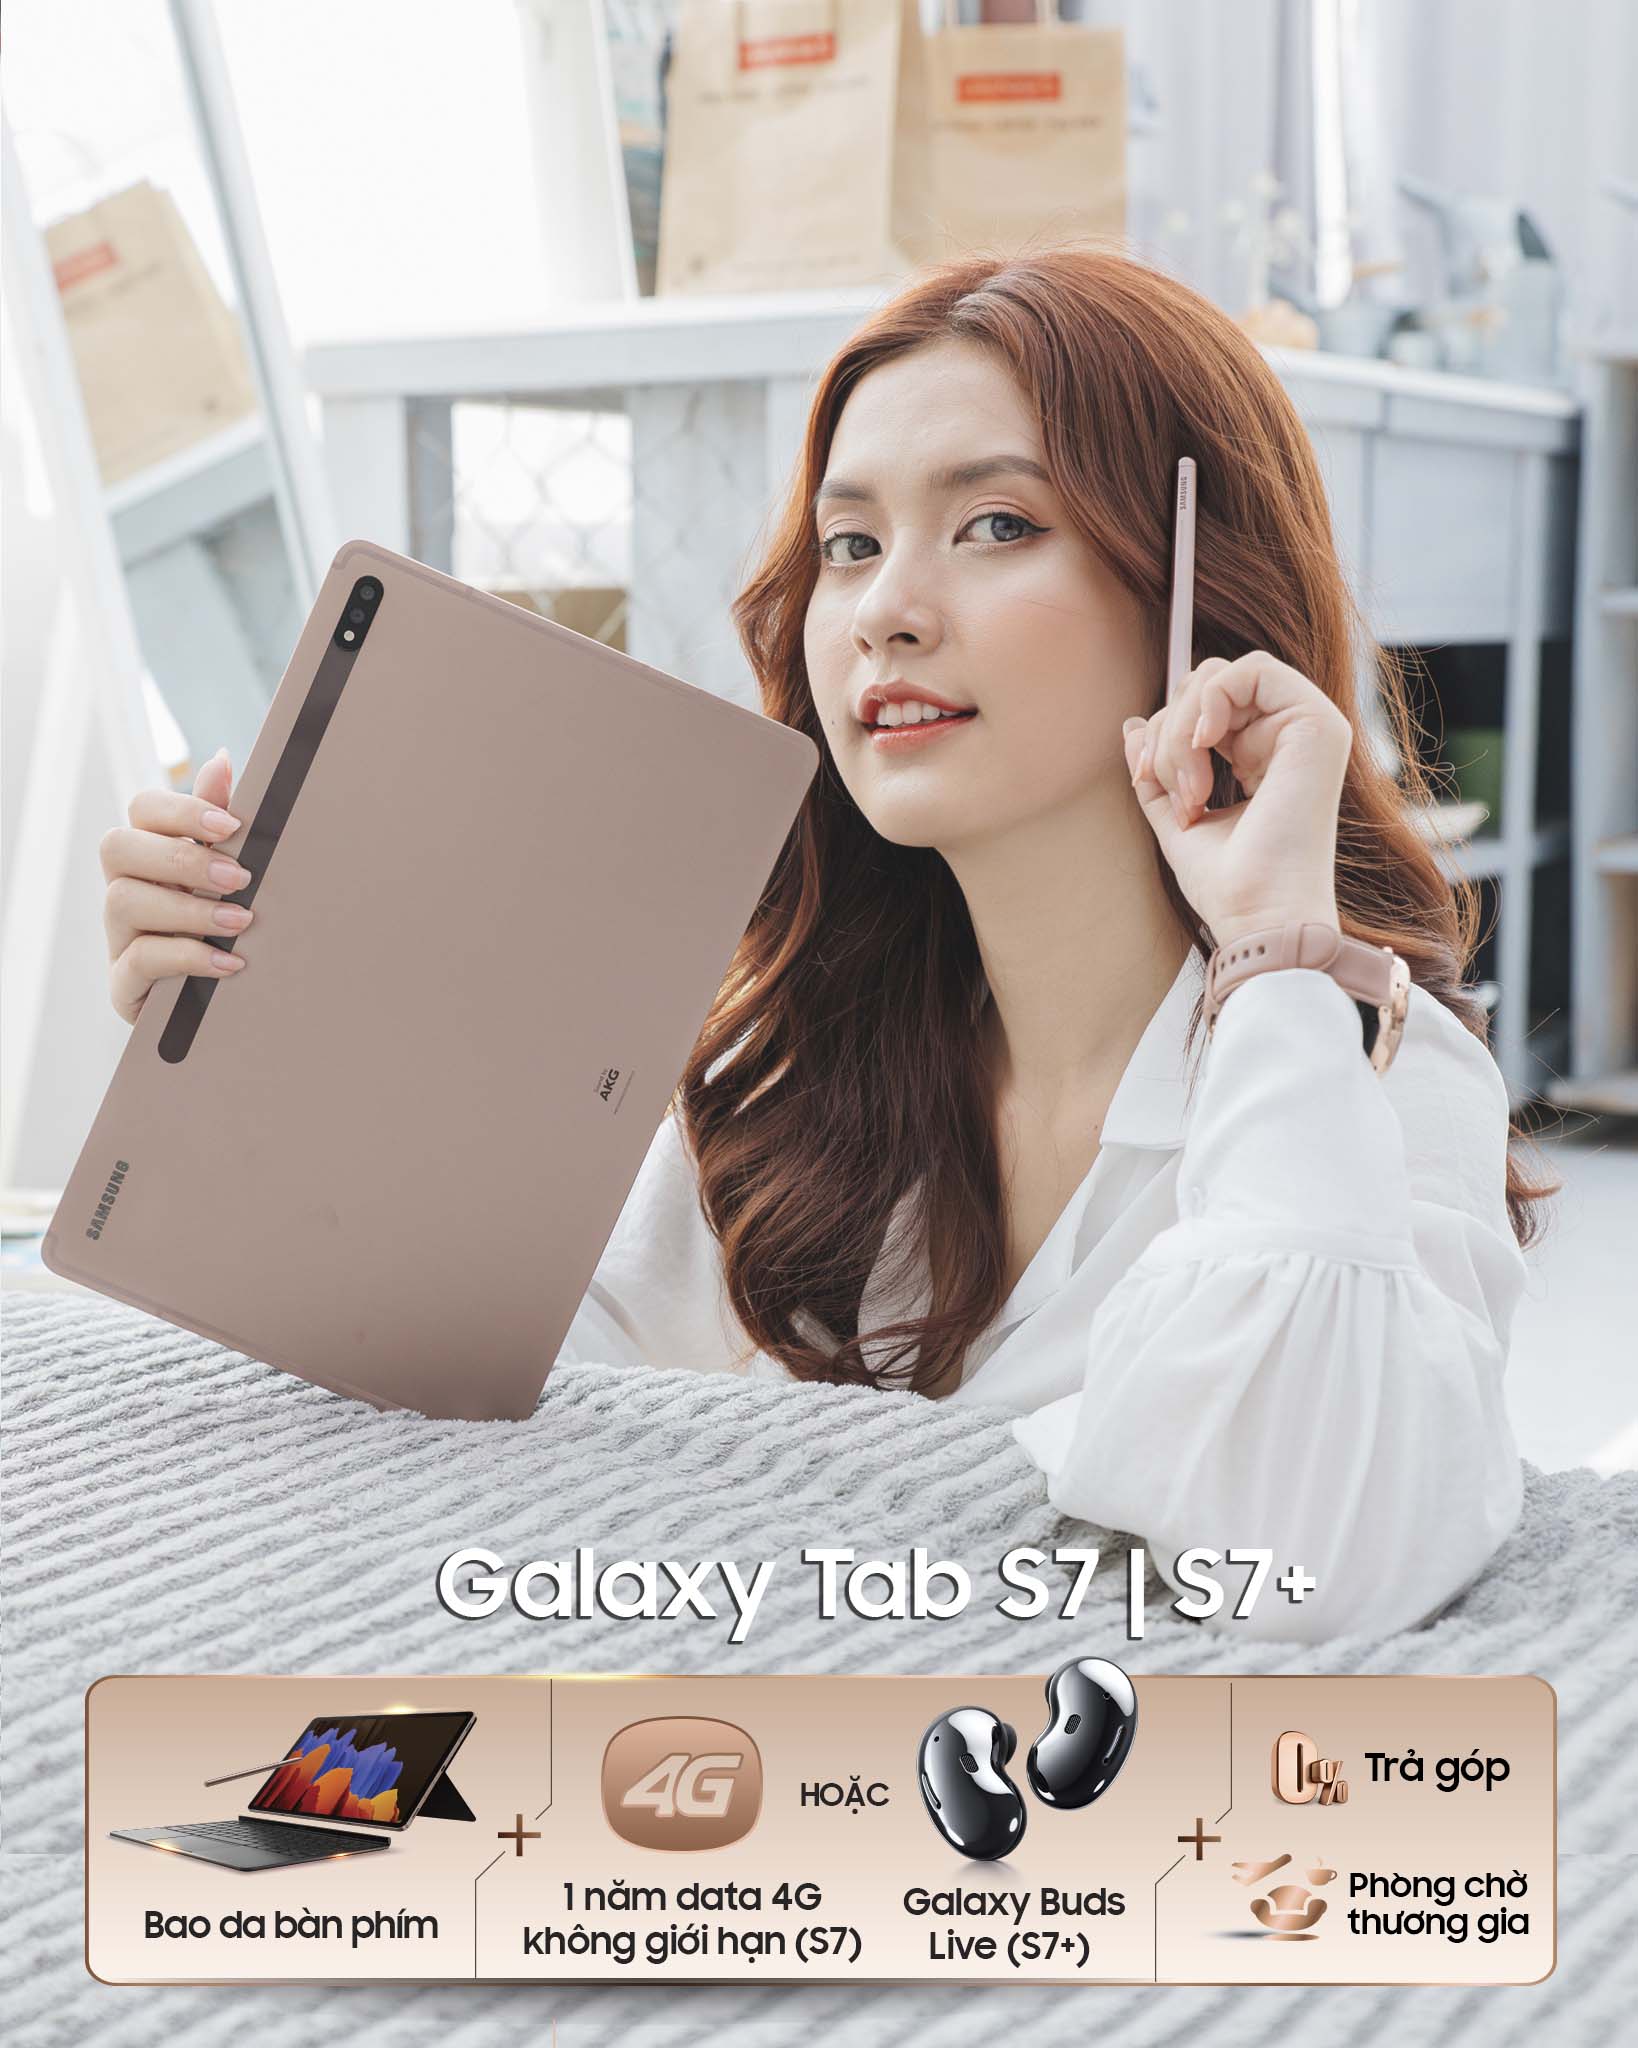 Galaxy Tab S7+ “cháy” 600 suất cọc, CellphoneS dừng đặt hàng sớm